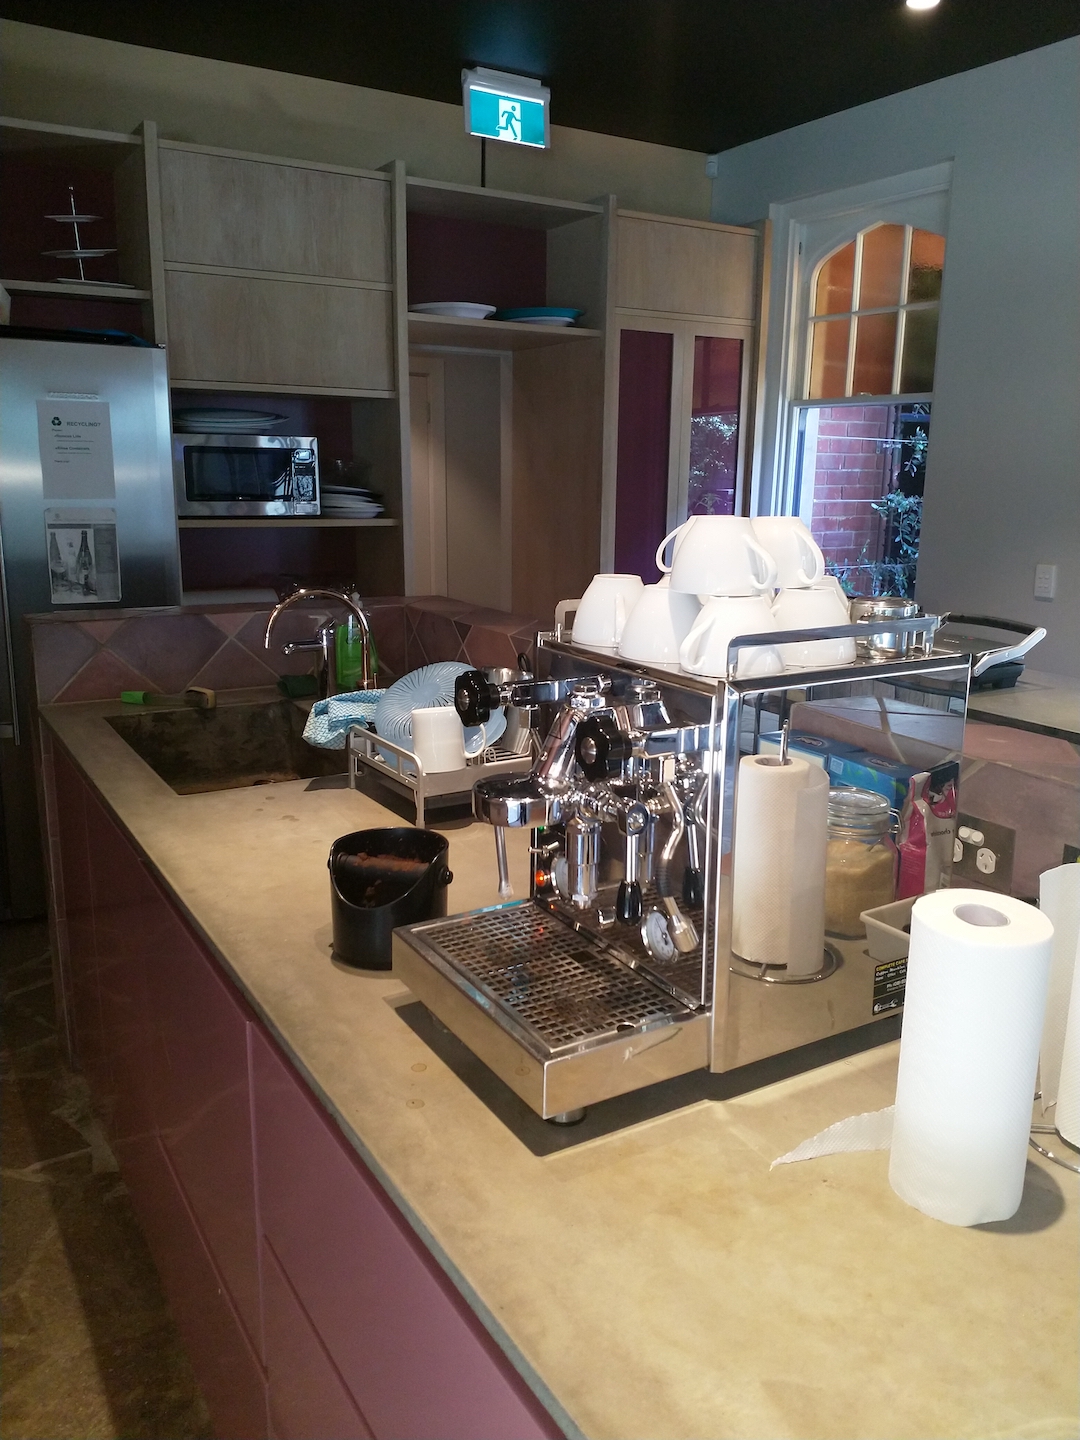 Mmmm coffee: The Base64 kitchen